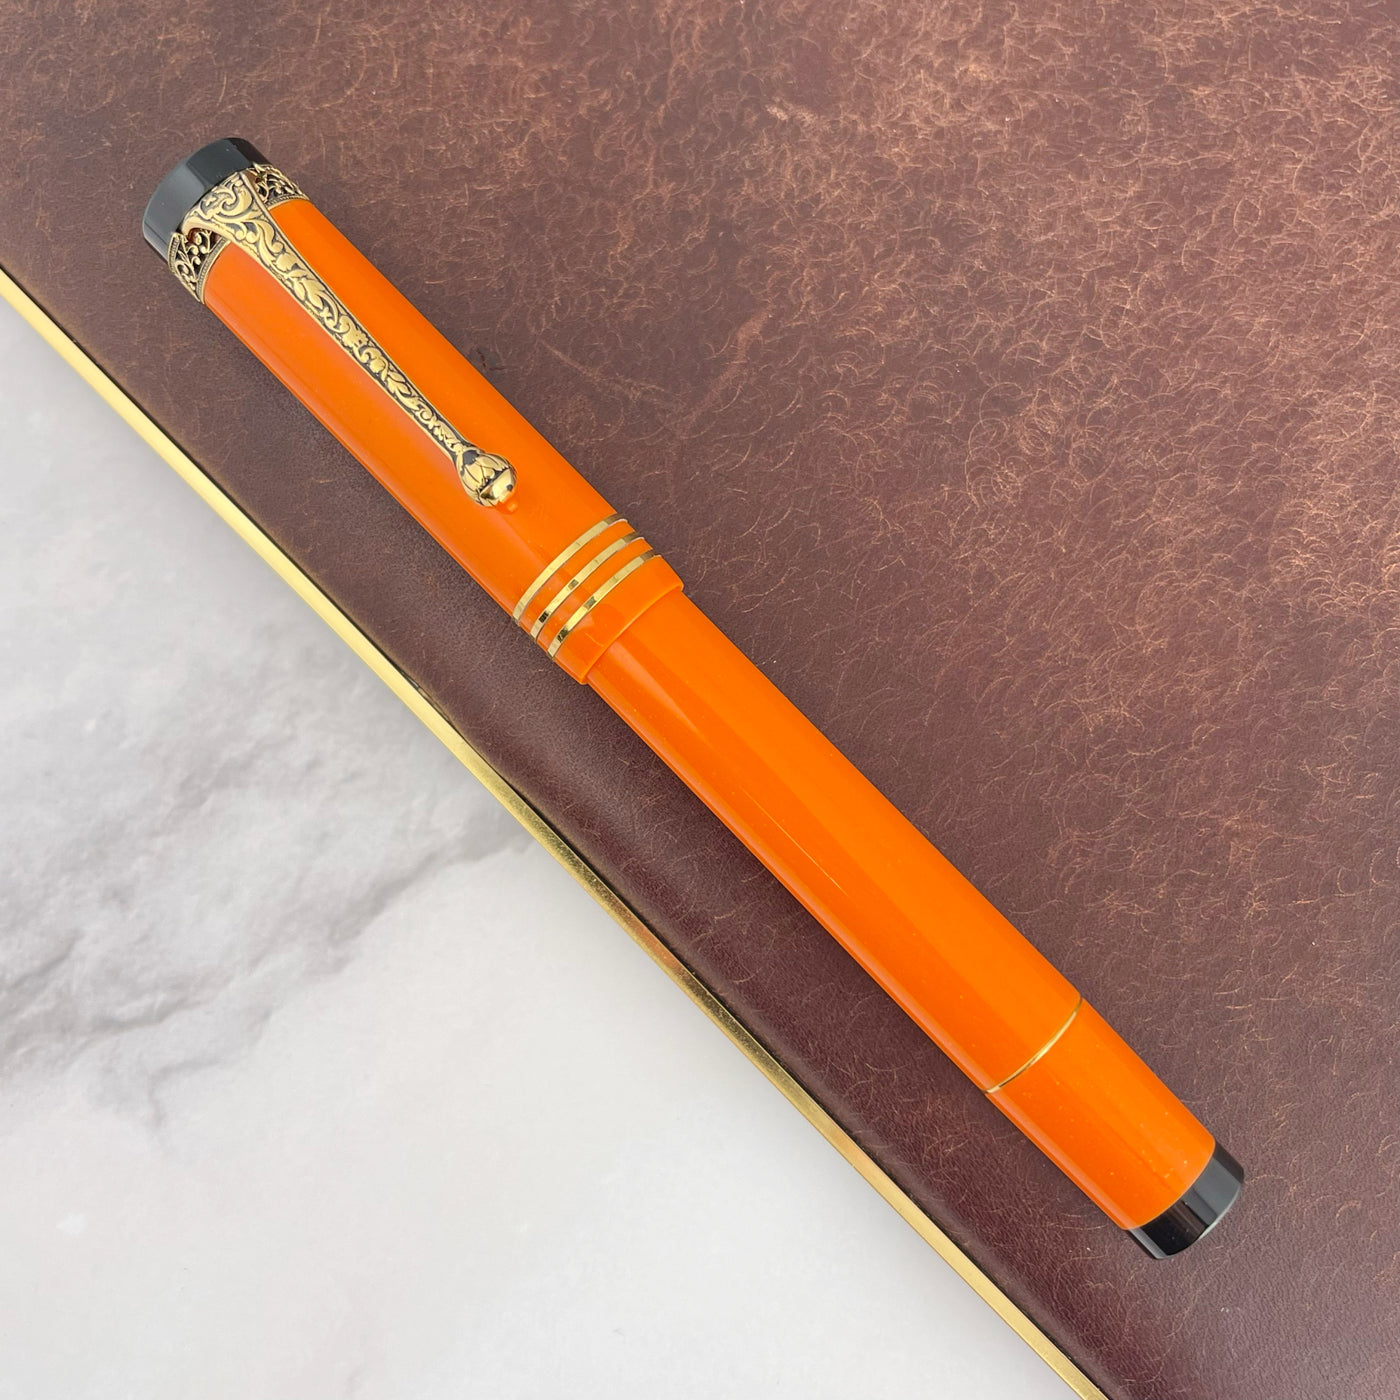 Aurora Internazionale Fountain Pen - Orange (Limited Edition)